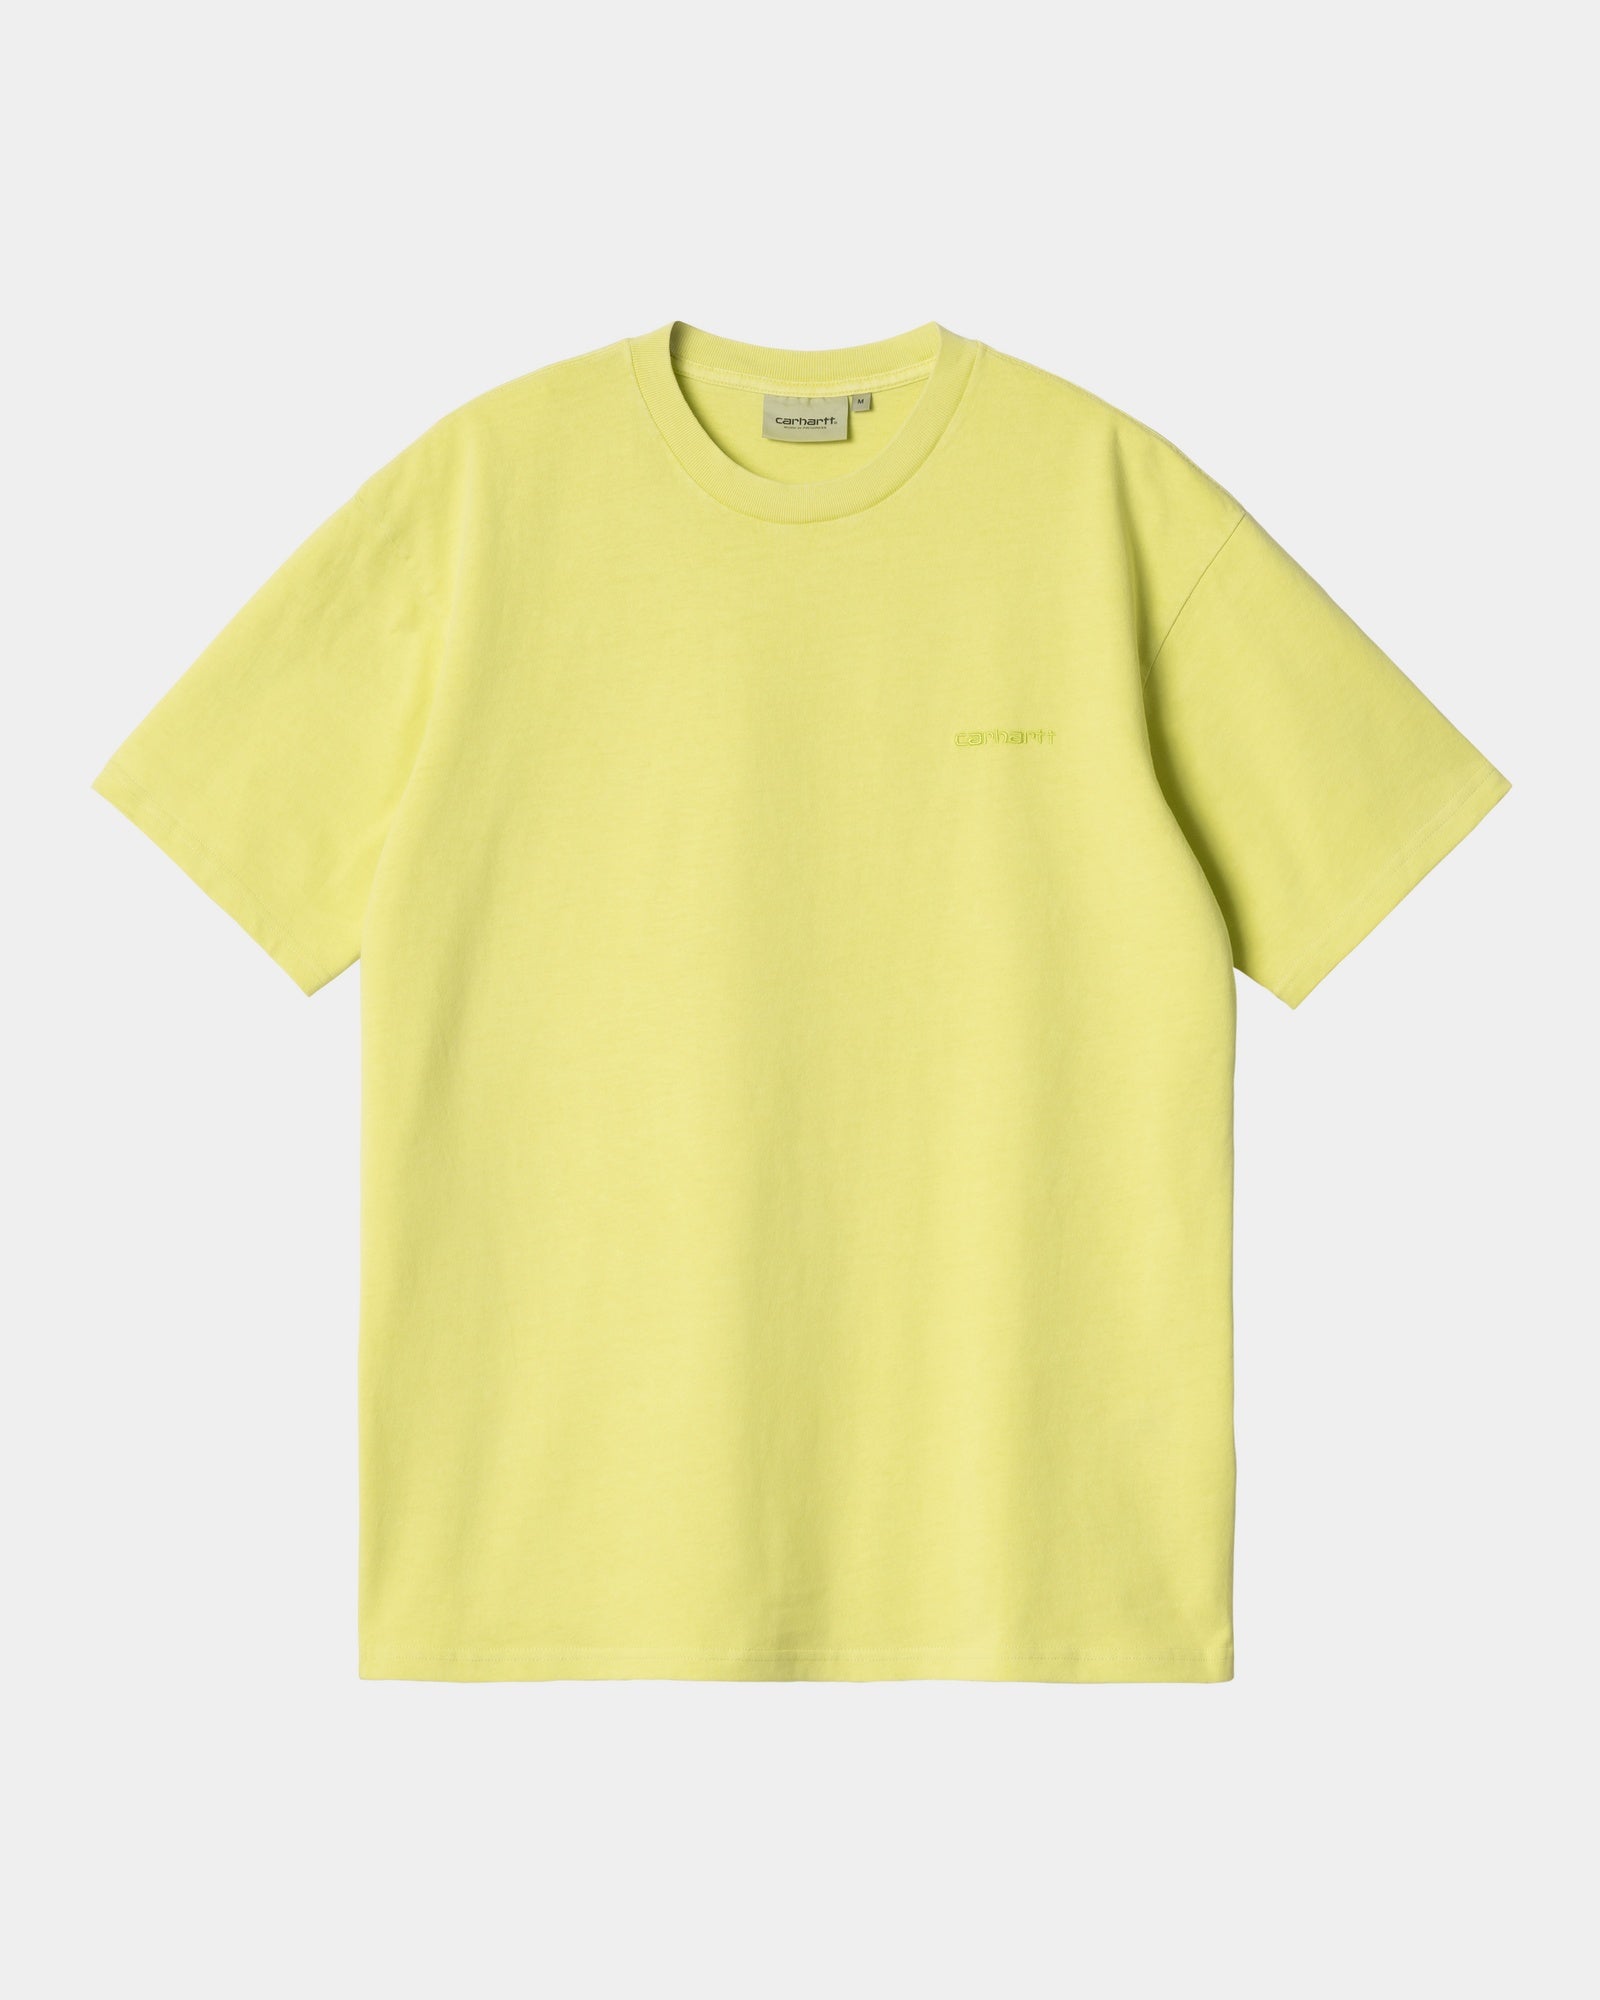 칼하트WIP Carhartt Duster Script T-Shirt,Arctic Lime garment dyed